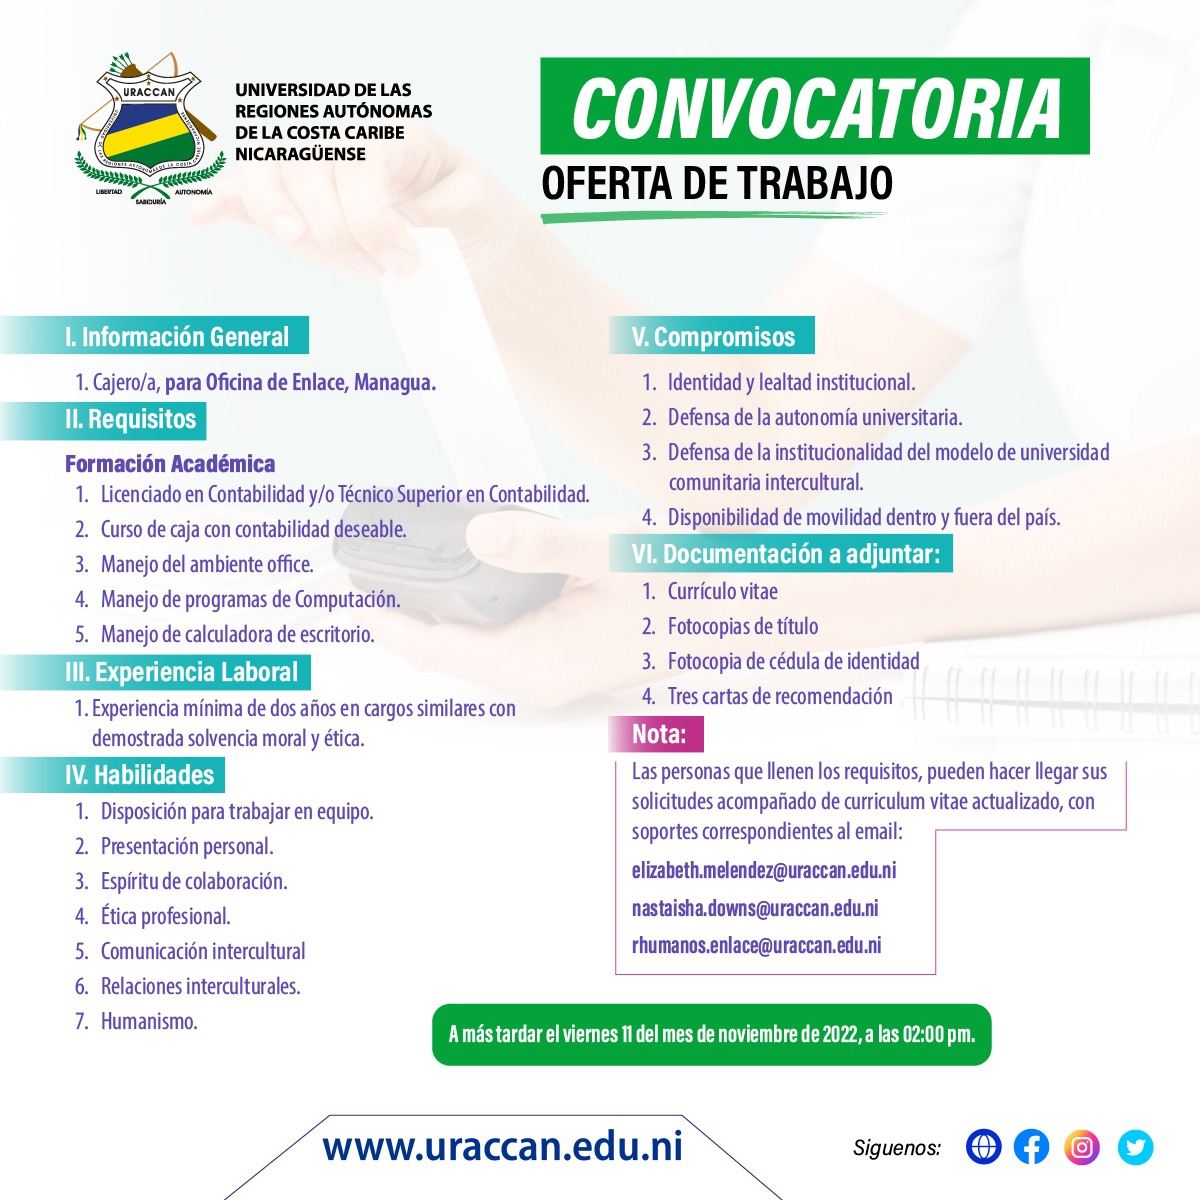 Licitación para el cargo denominado Cajero/a para Oficina de Enlace, Managua